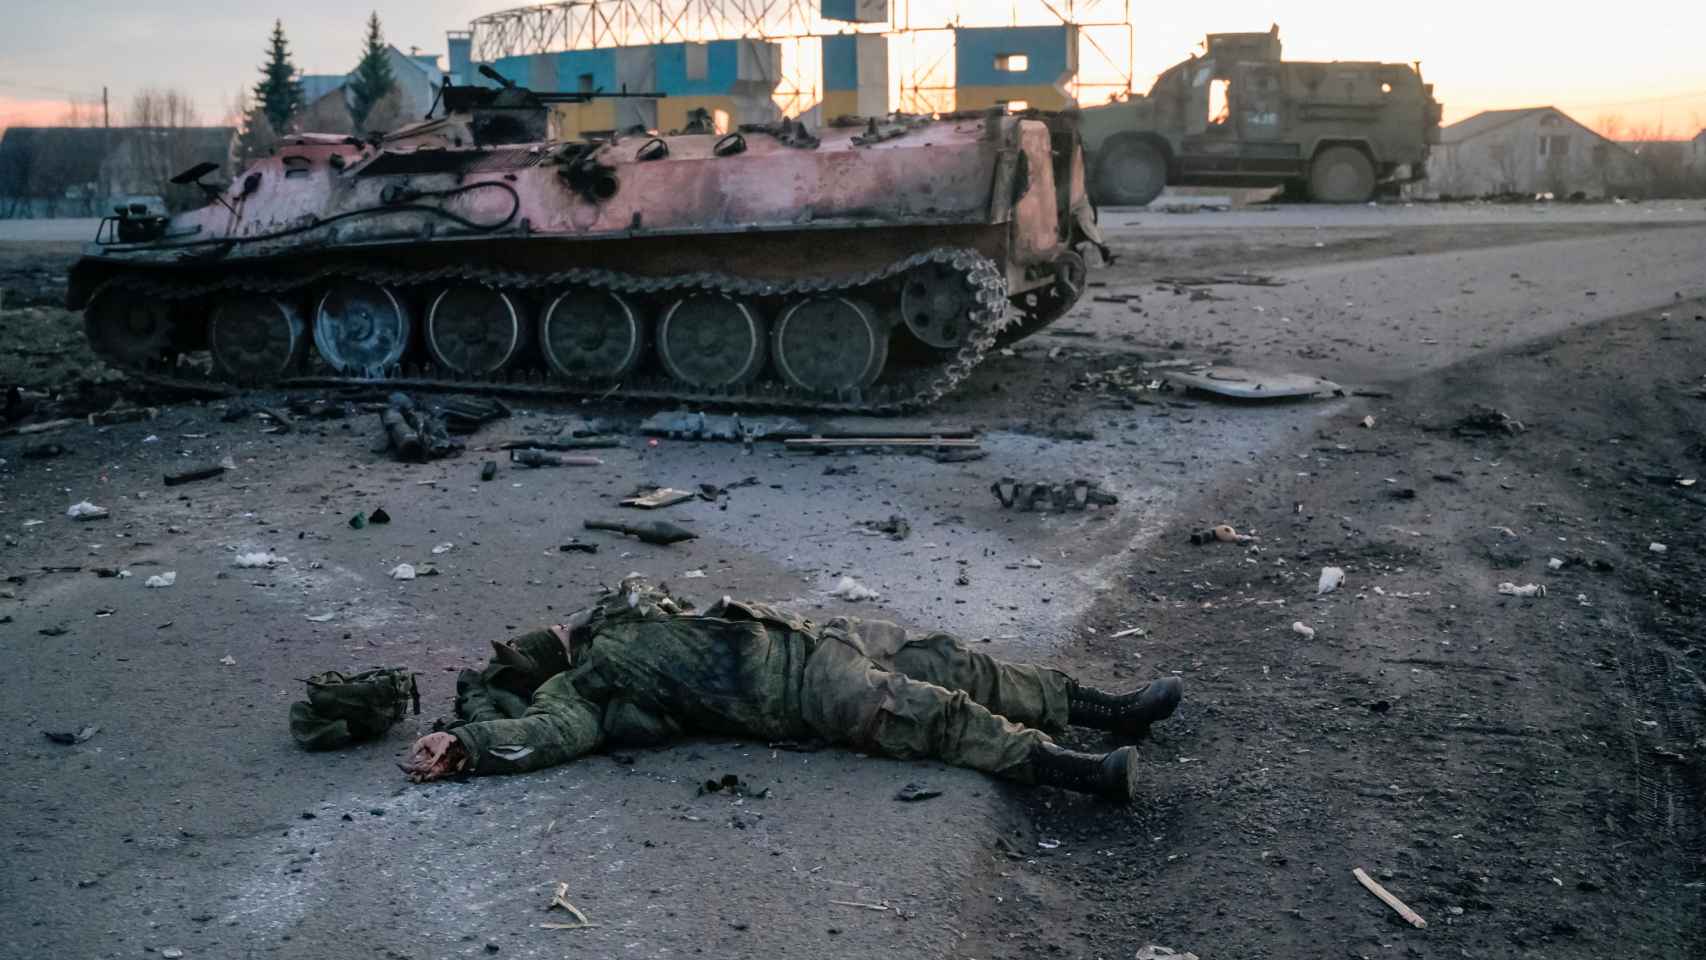 El cuerpo de un soldado, sin insignias, que según el ejército ucraniano es un militar del ejército ruso muerto en combate, yace en una carretera a las afueras de Járkov.